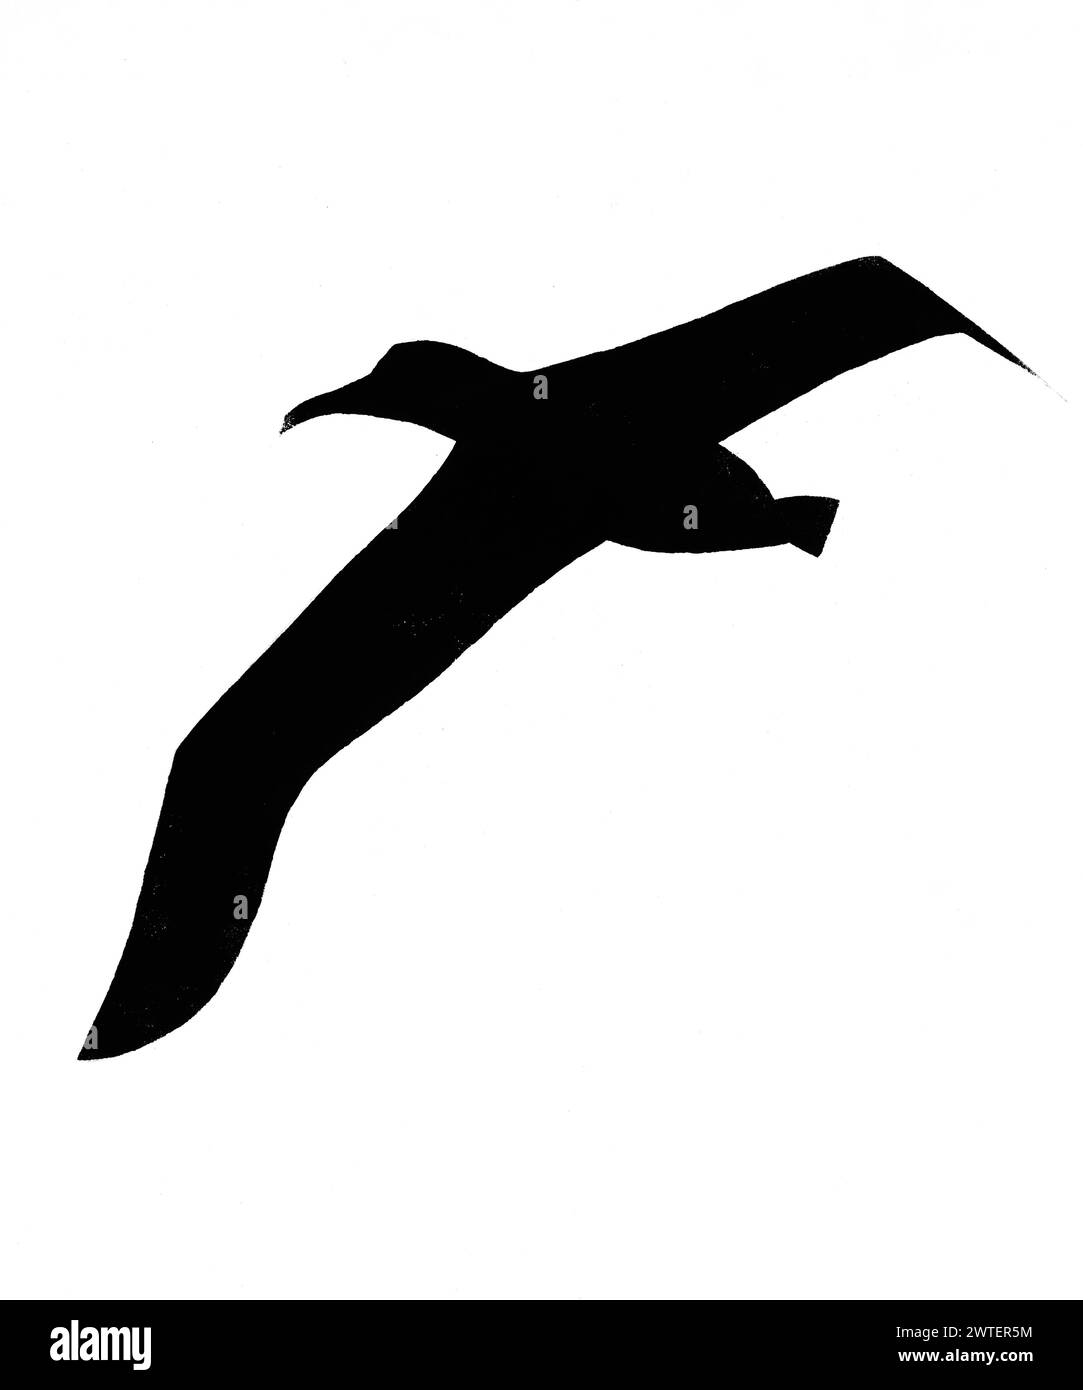 Silueta de gran pájaro volador albatros dibujado a mano con sello con pintura de tempera negro sobre papel blanco Foto de stock